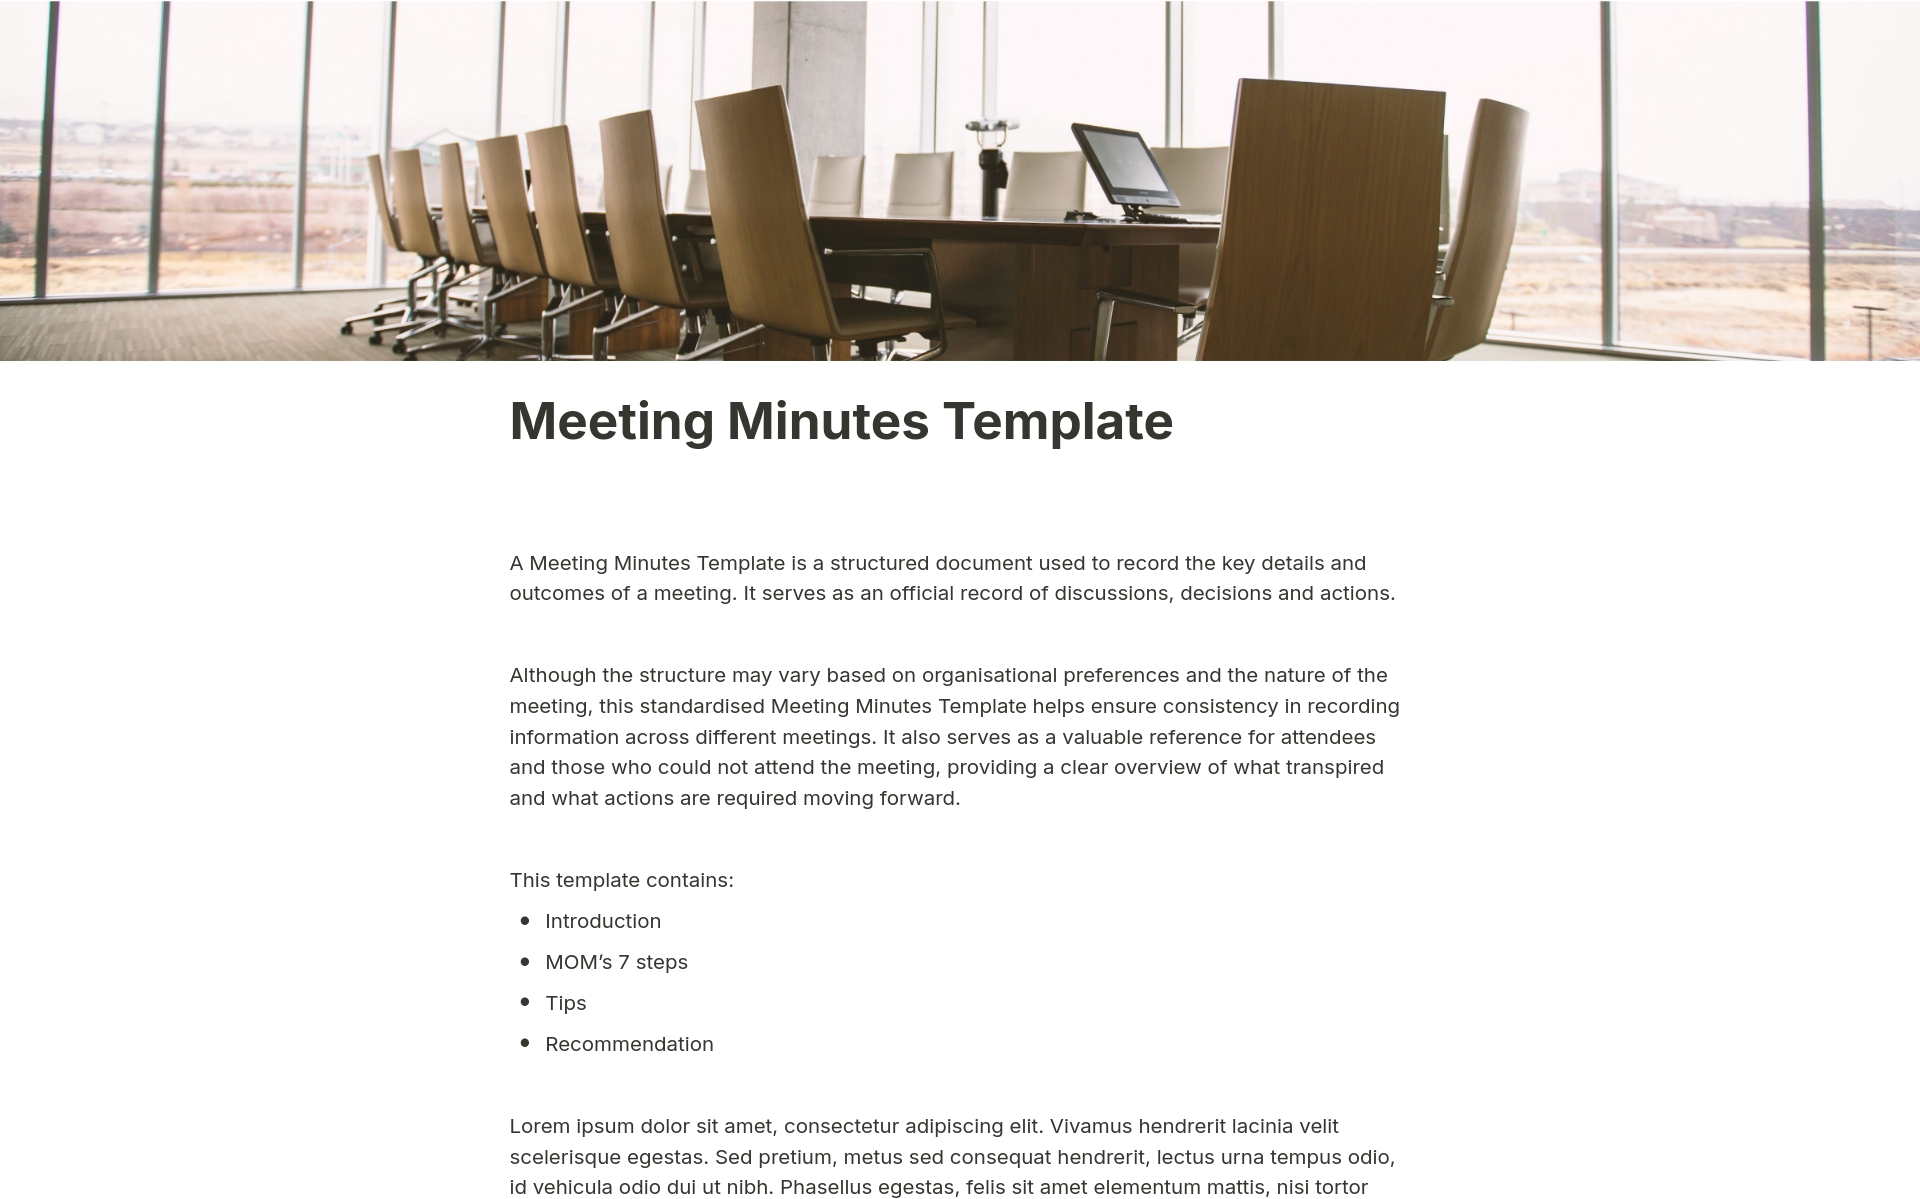 En förhandsgranskning av mallen för Meeting Minutes